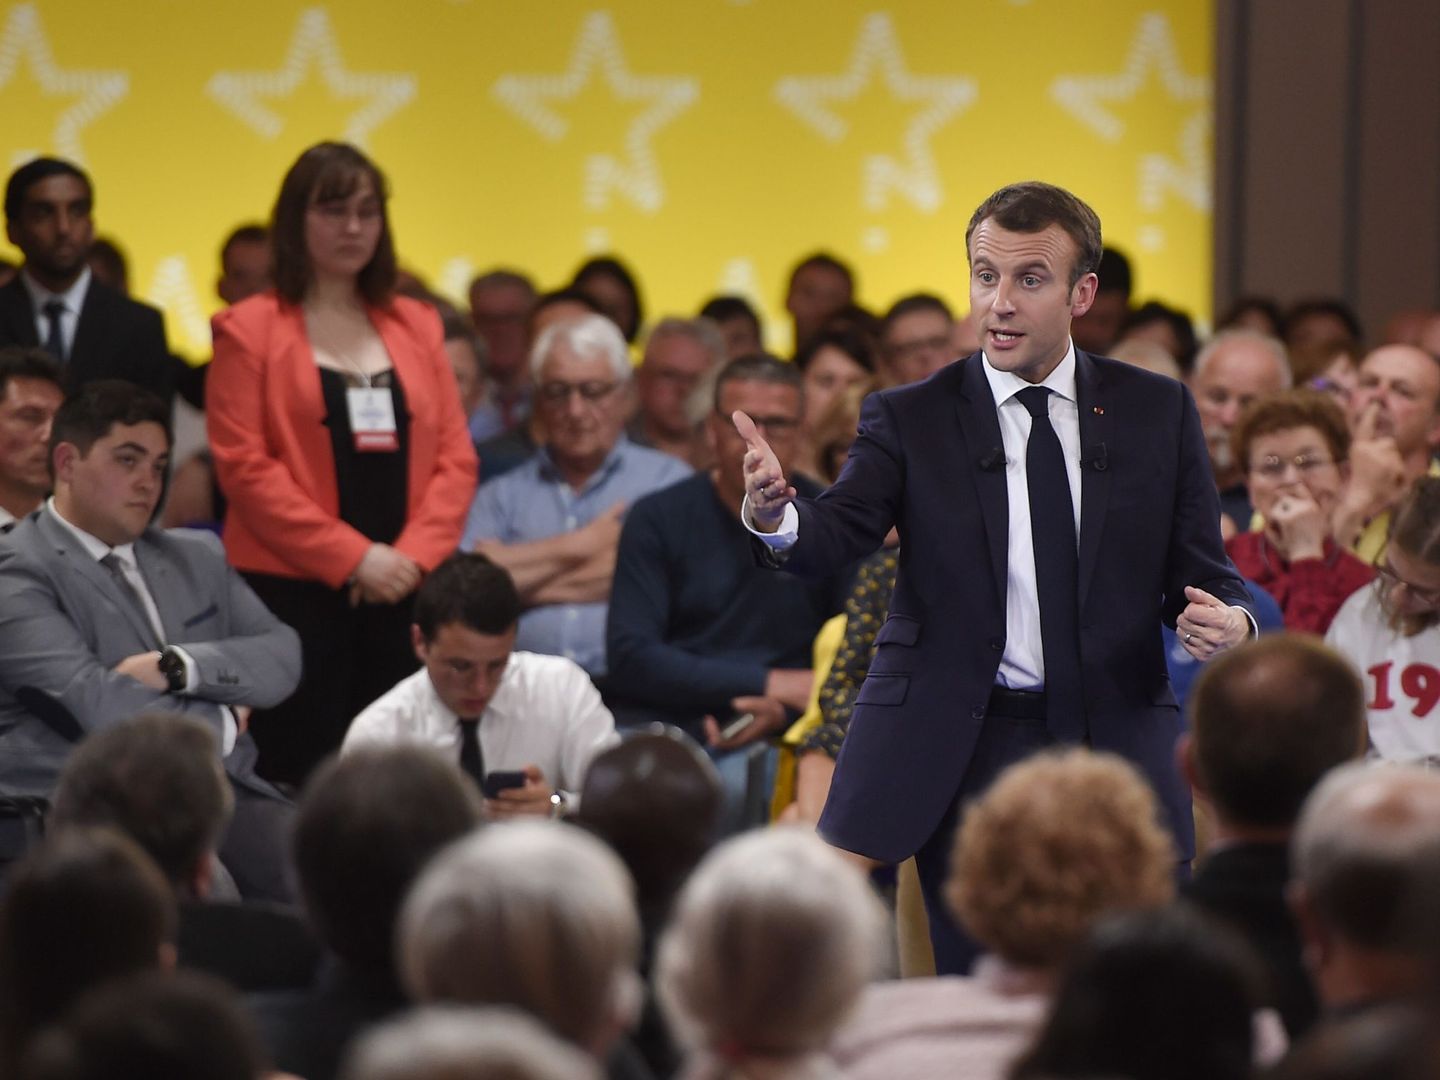 El presidente Emmanuel Macron habla durante el primero de una serie de encuentros con los ciudadanos en Epinal, Francia, el 17 de abril de 2018. (Reuters)